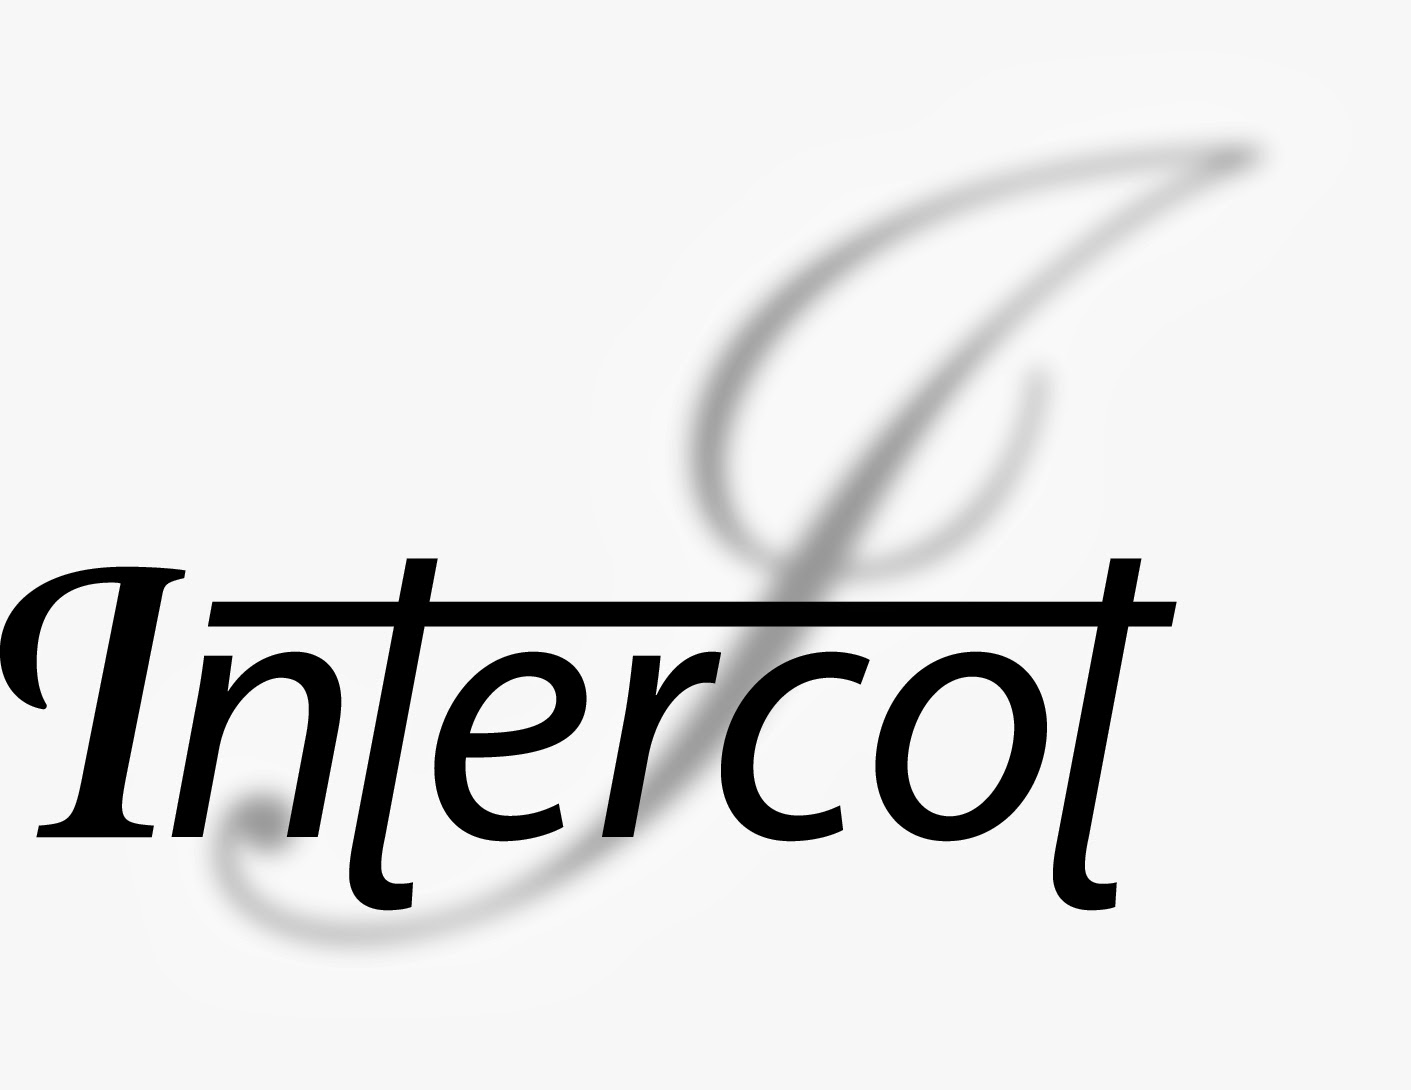 Intercot